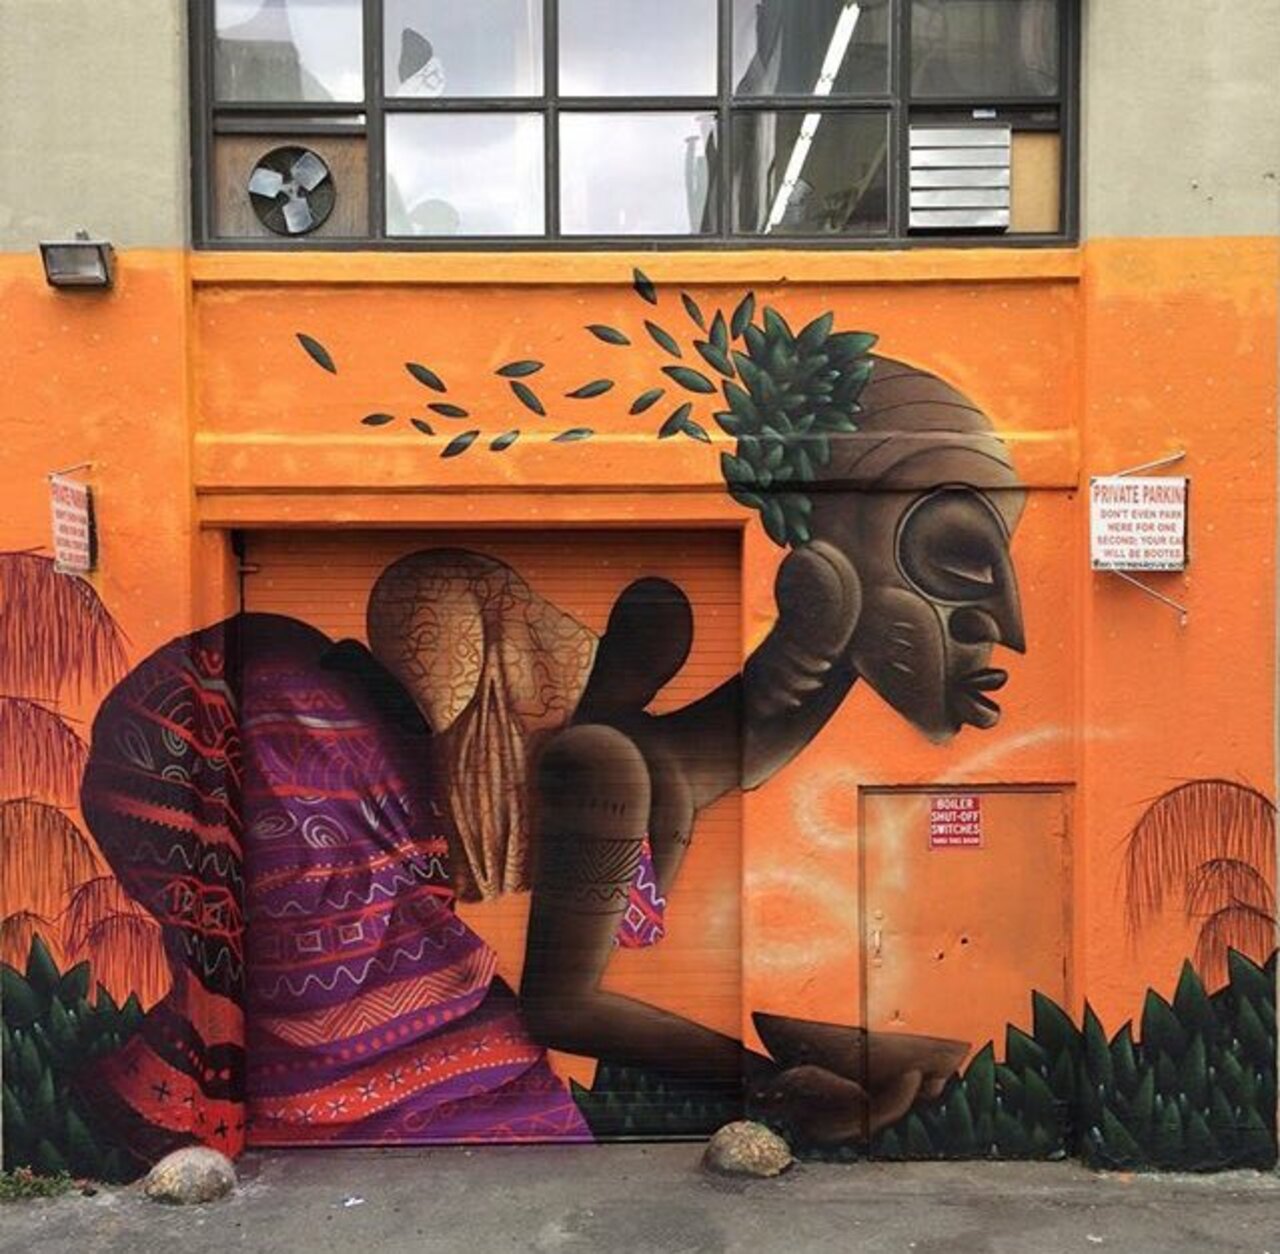 New Street Art by Alexandre Keto in NYC 

#art #graffiti #mural #streetart https://t.co/SlcOweSIm5